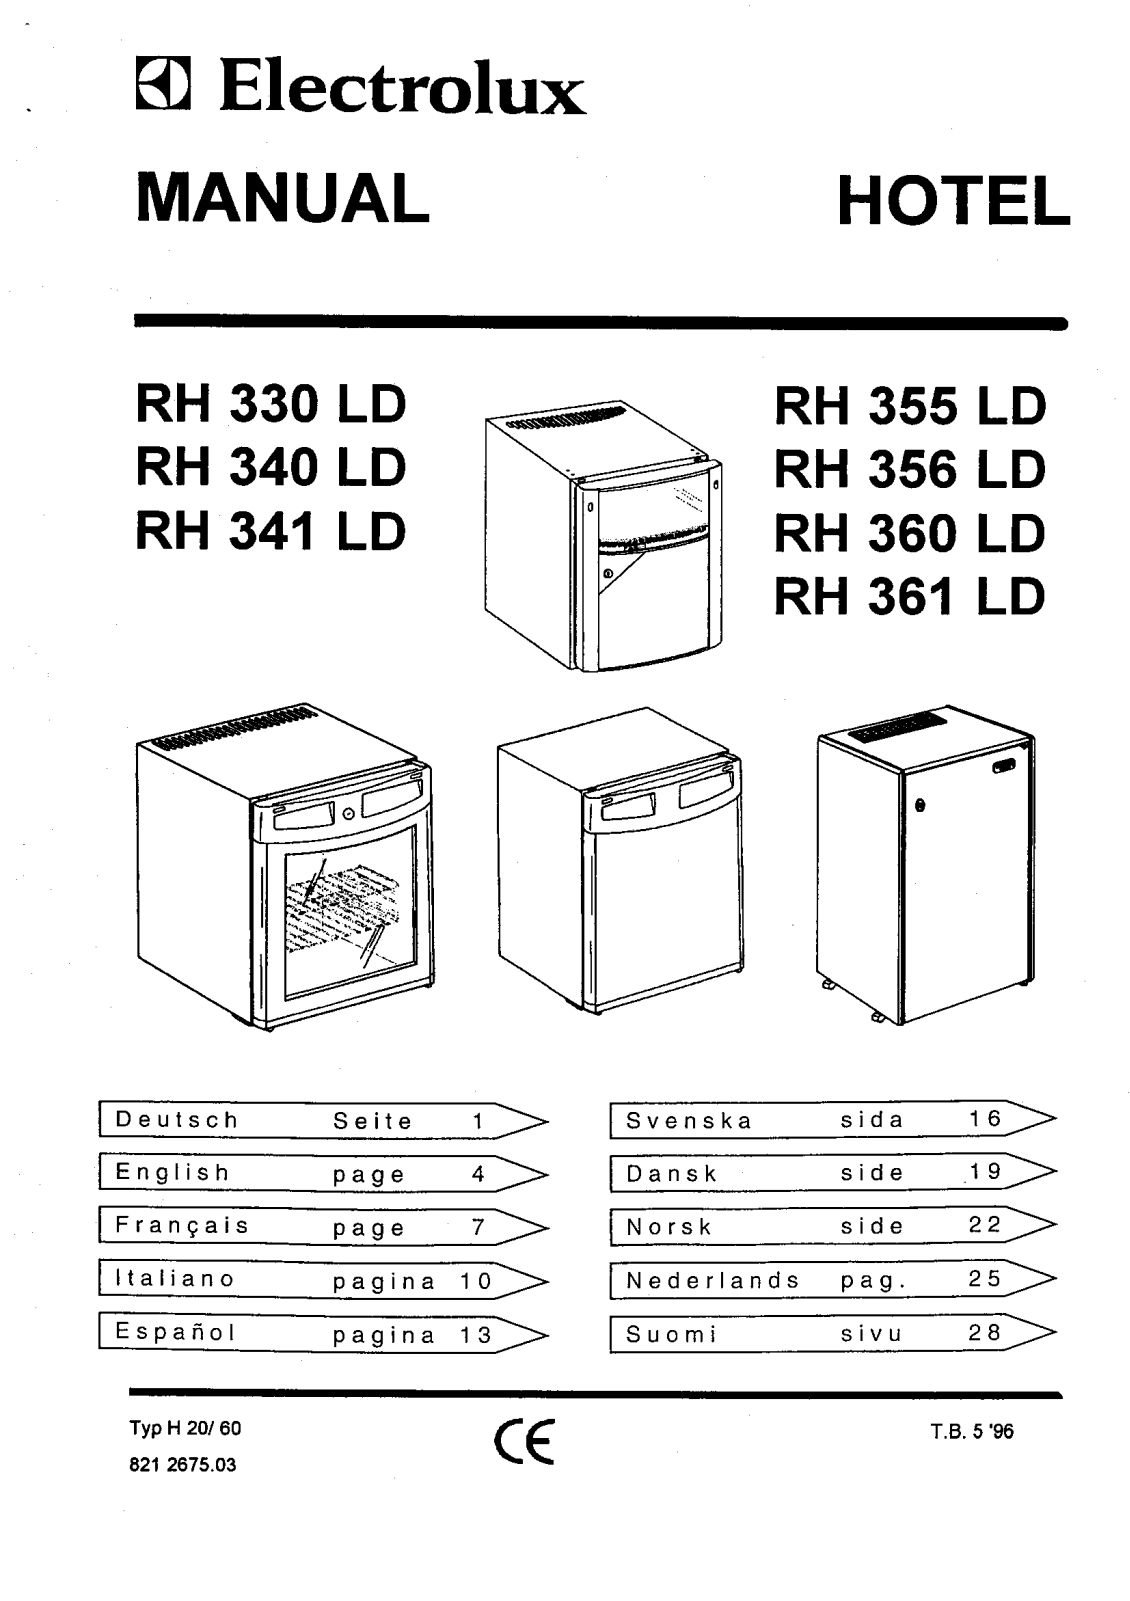 electrolux rh 330 ld, rh 340 ld, rh 341 ld, rh 355ld, rh 356ld User Manual